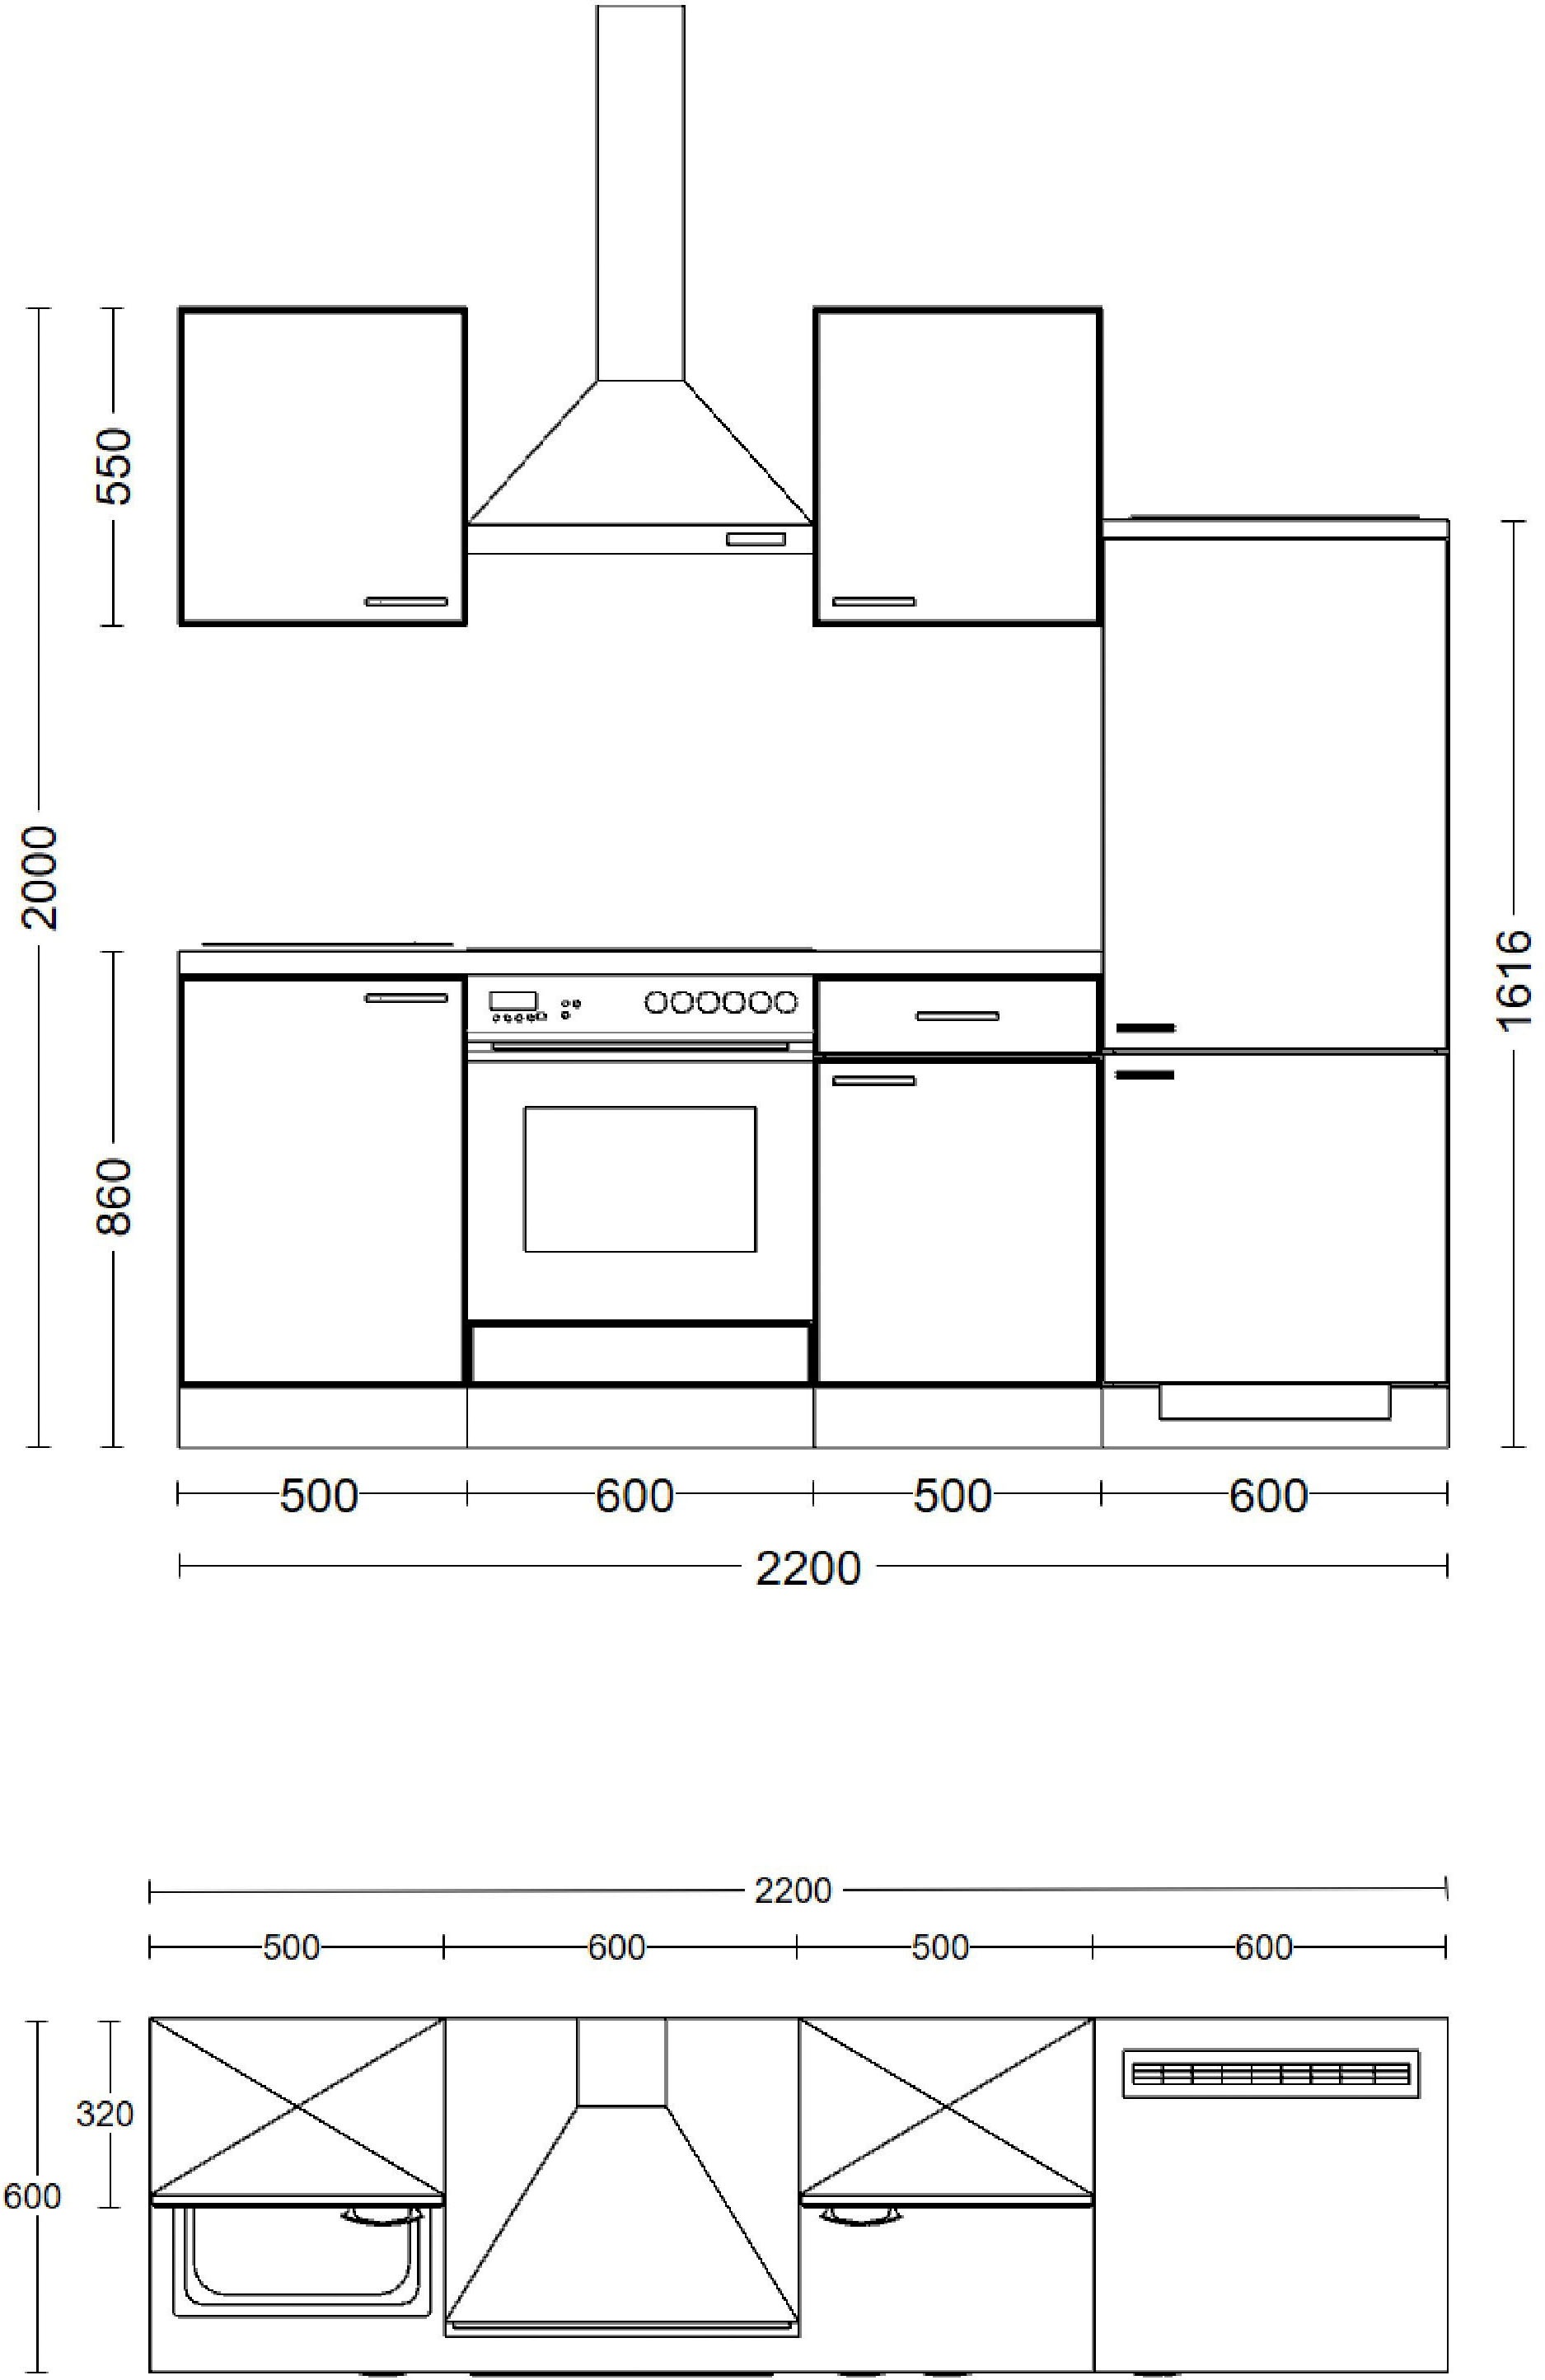 Flex-Well Küche »Florenz«, Breite 220 cm, mit und ohne E-Geräten lieferbar